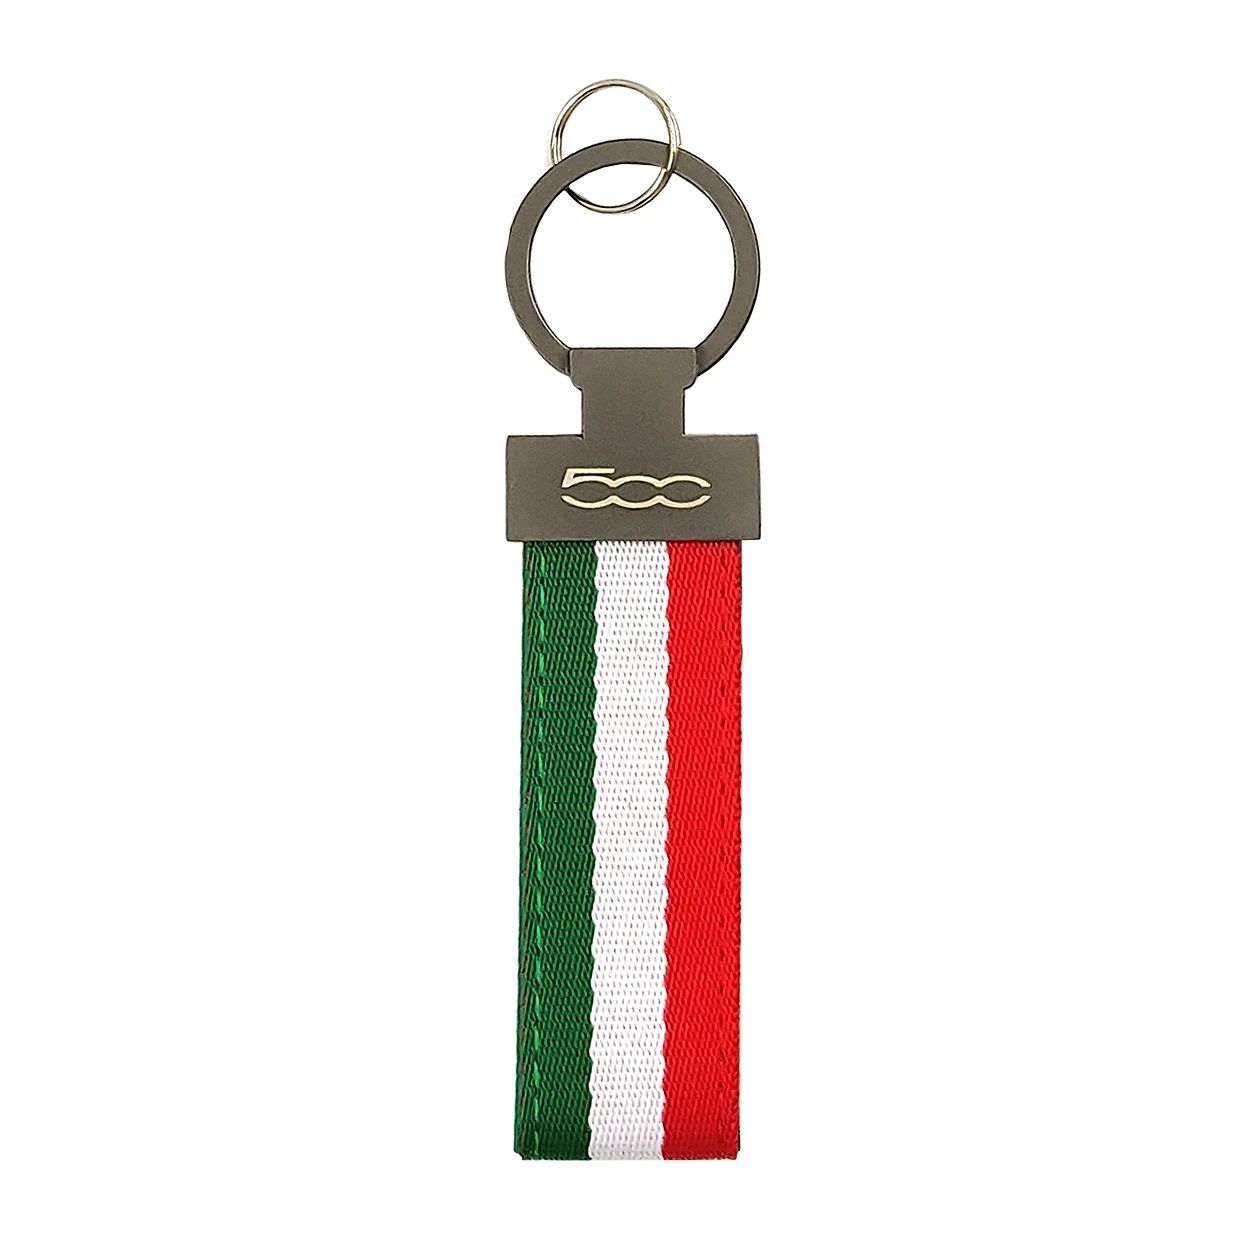 1 шт., автомобильный брелок с итальянским флагом для Alfa Romeo Fiat 500 abarth, металлический брелок для ключей, эмблема, брелок для ключей